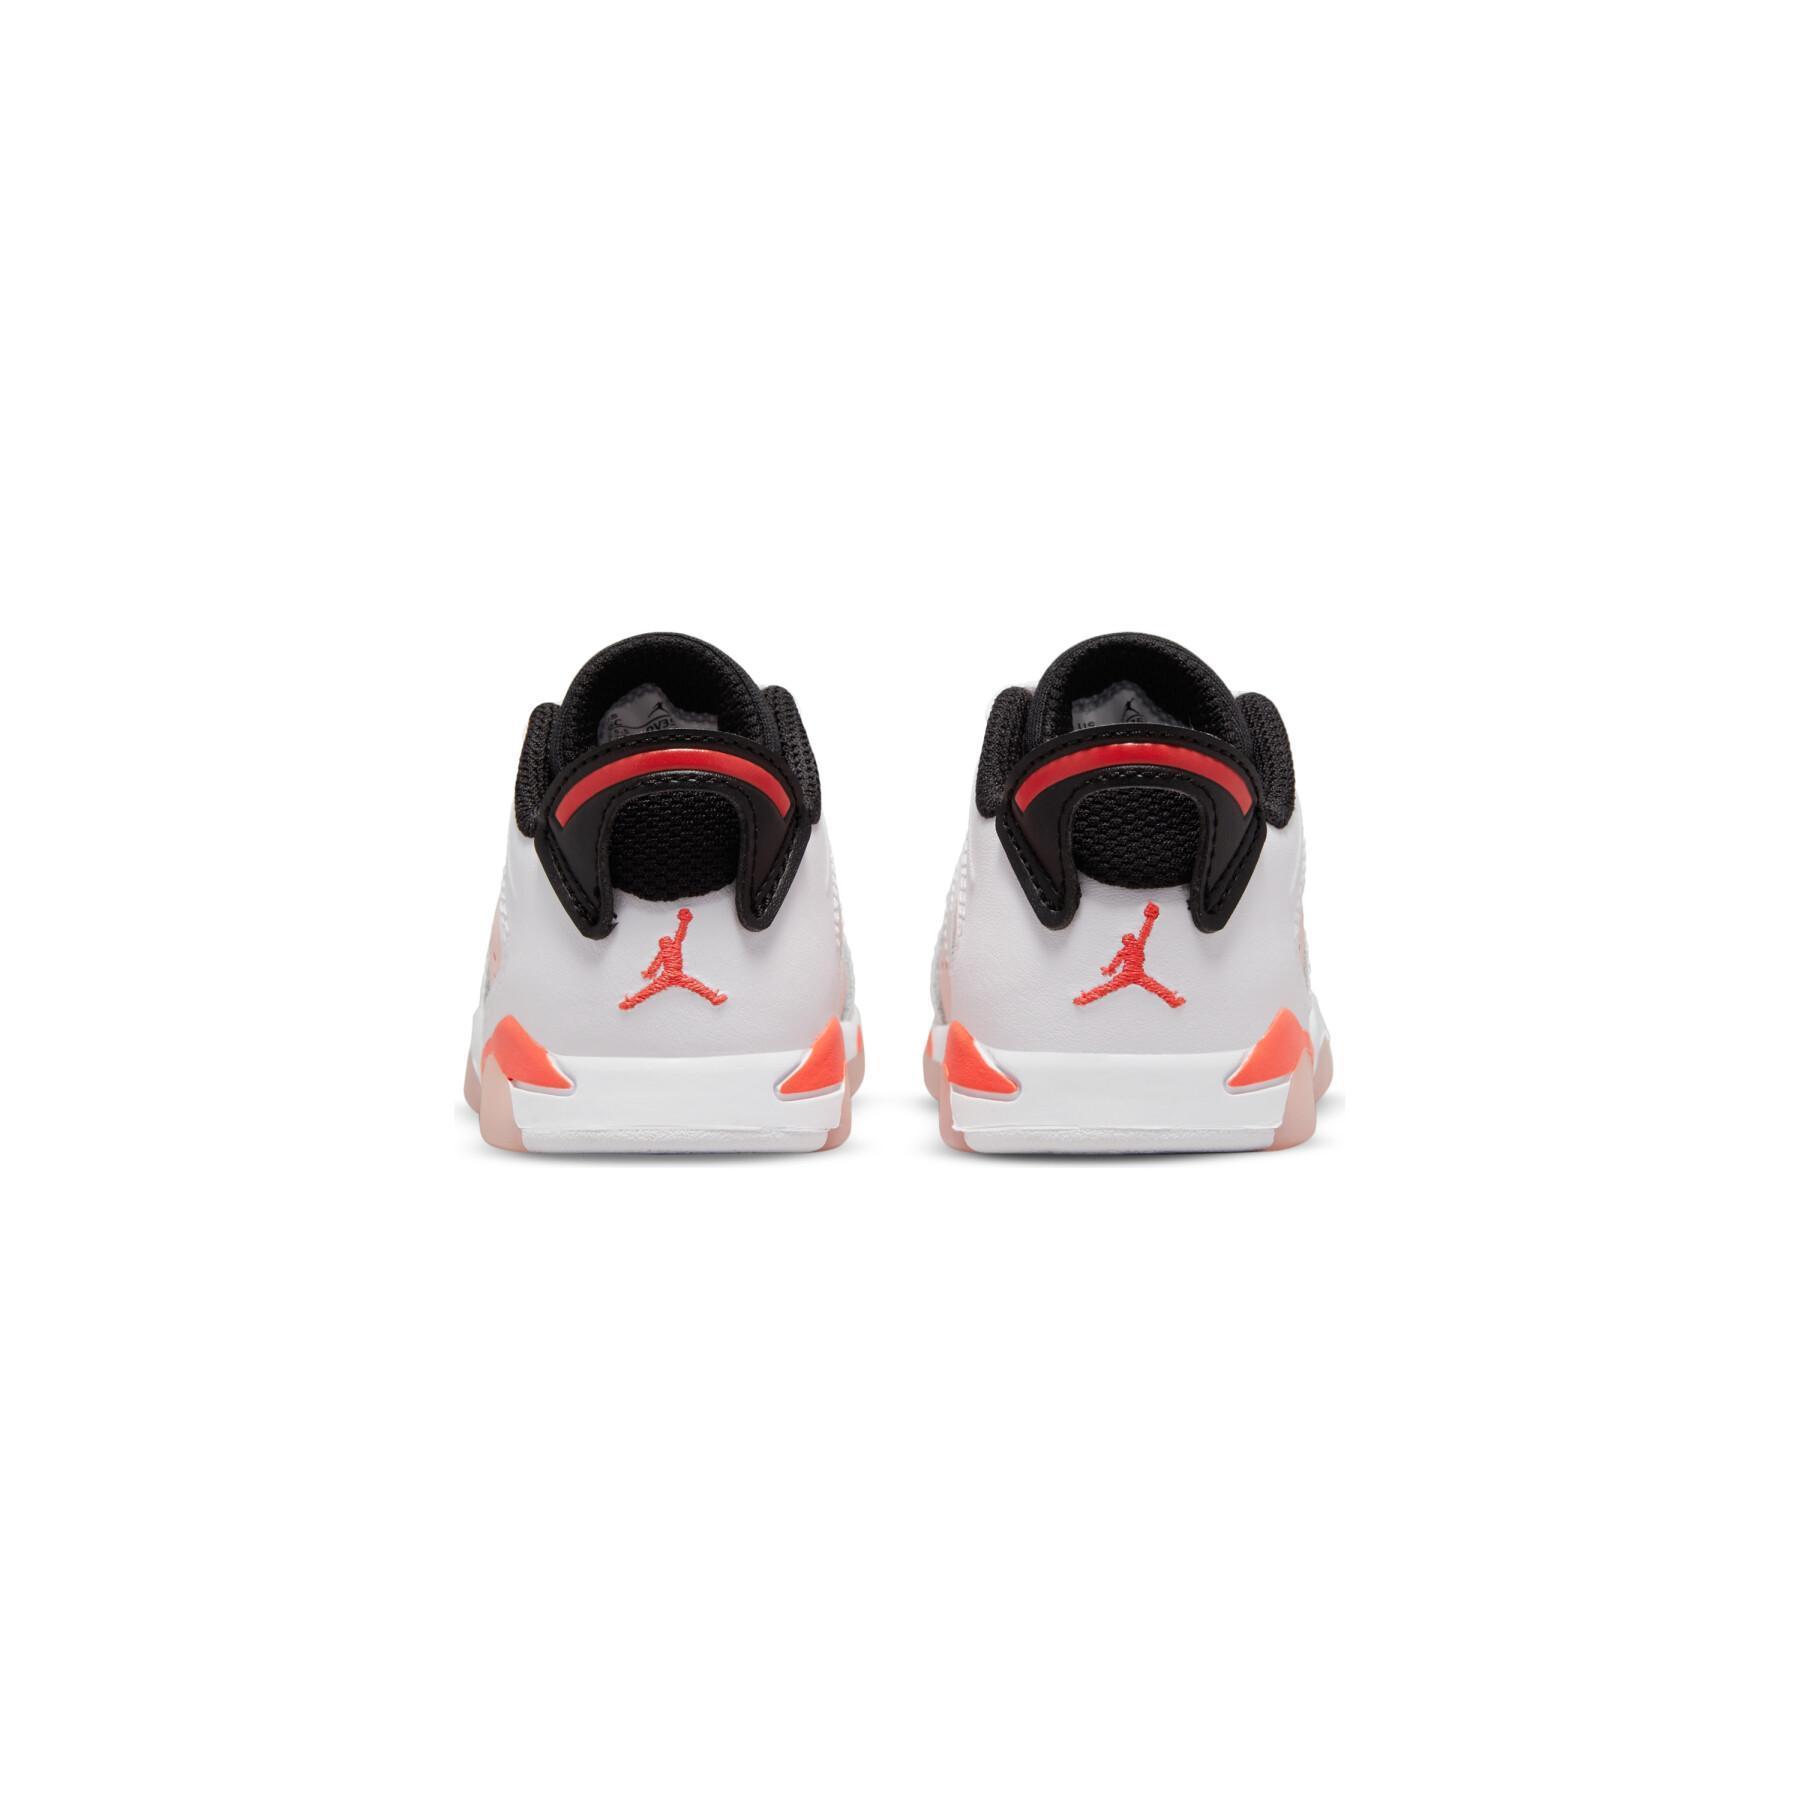 Allenatori per bambini Nike Jordan 6 Retro Low (TD)